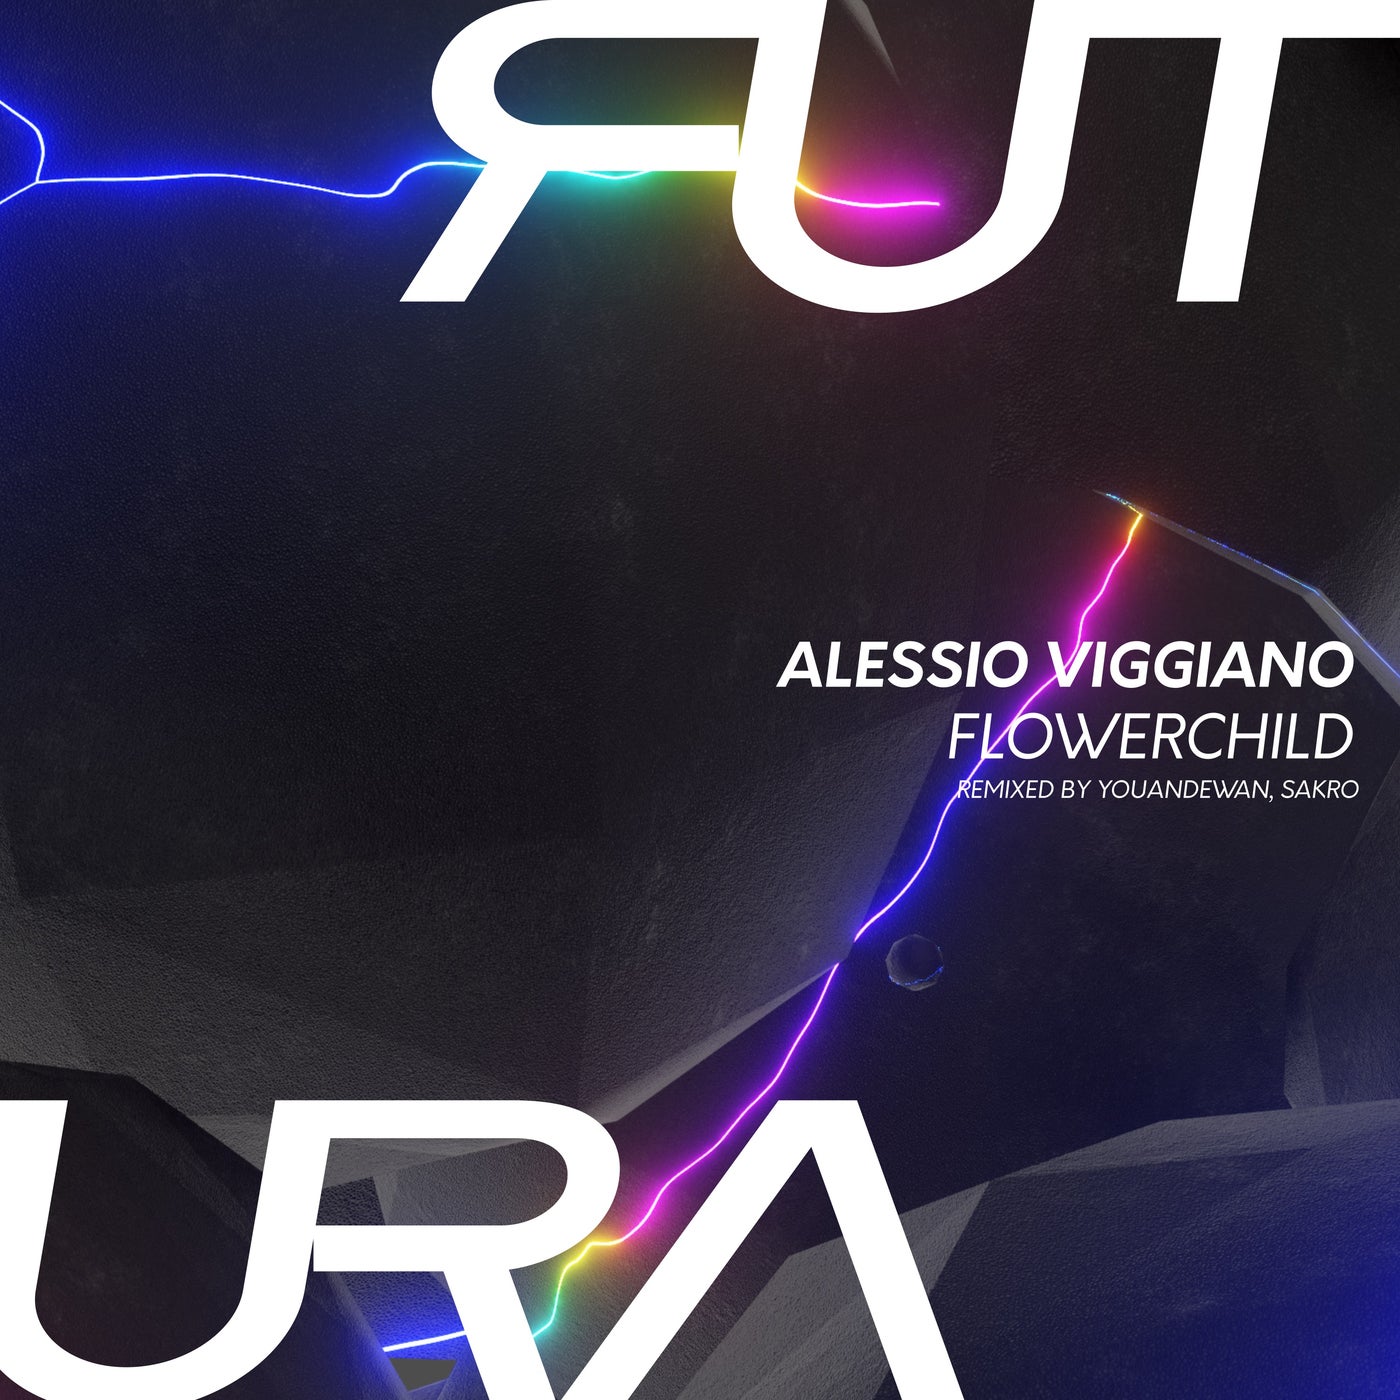 Alessio Viggiano – Flowerchild EP [FUTURA005]